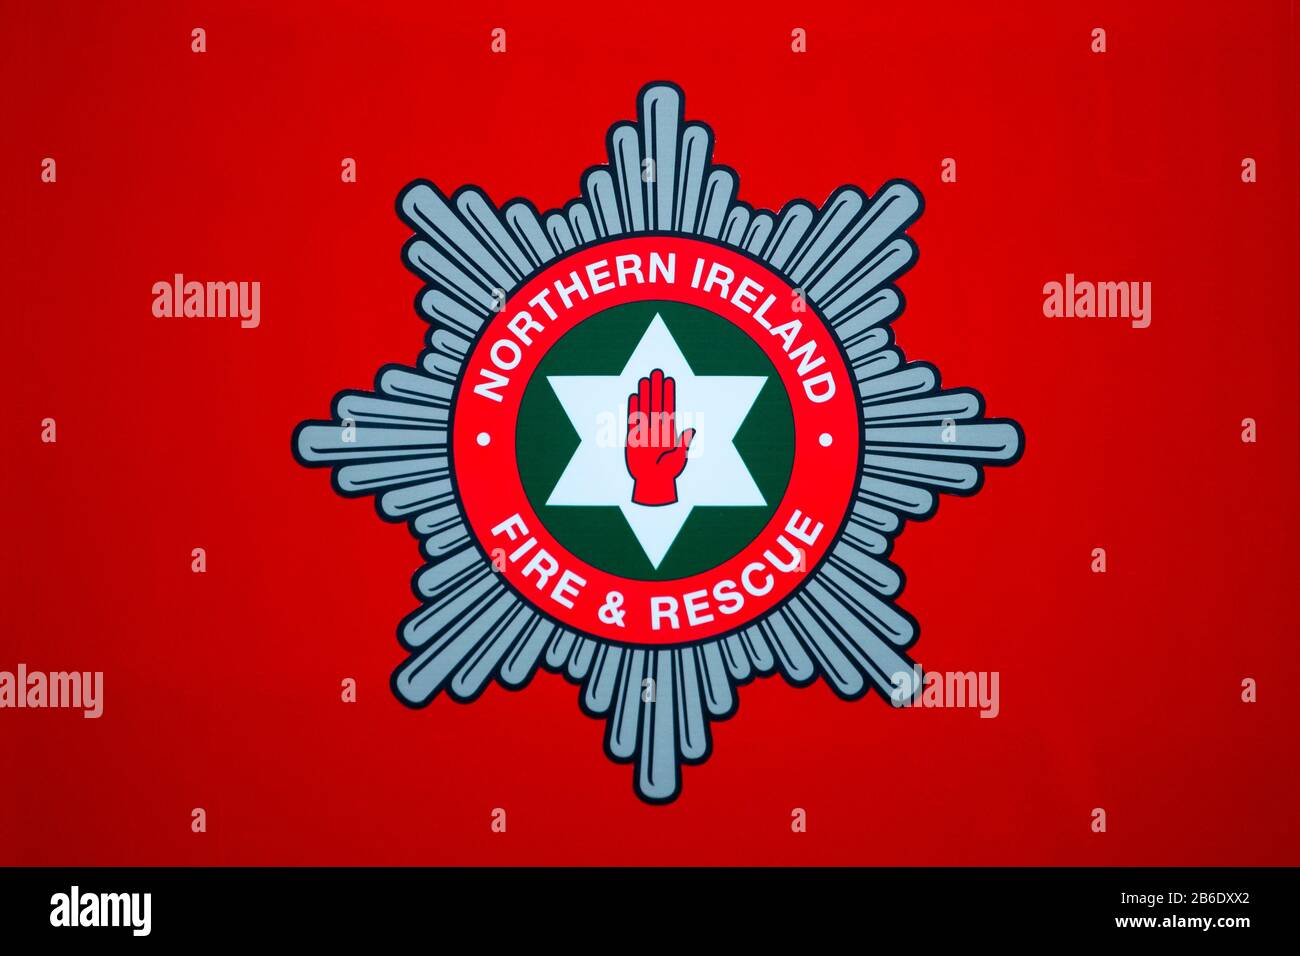 fire station logo uk